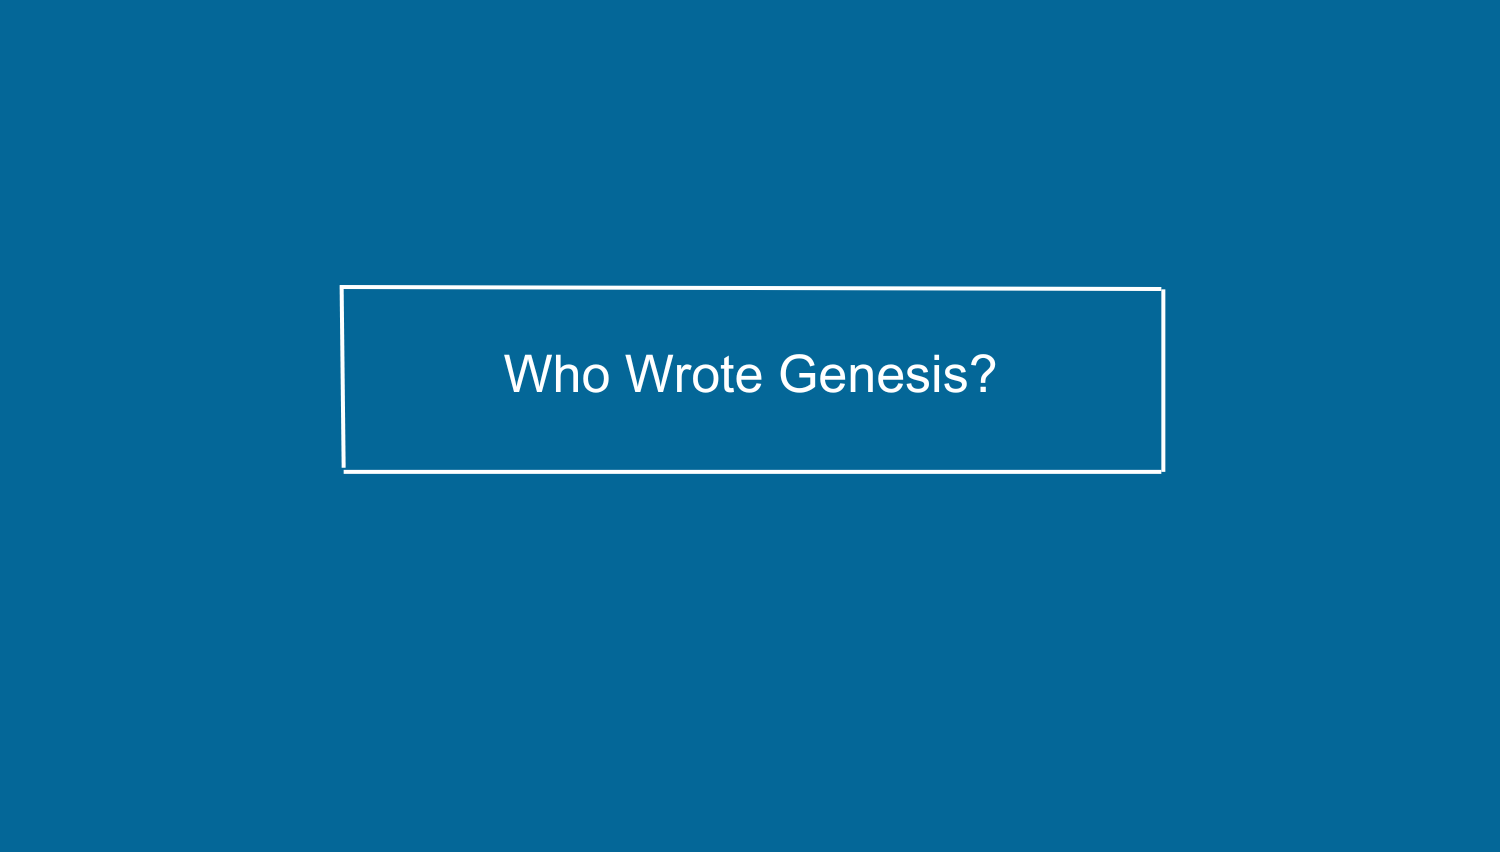 Who wrote Genesis